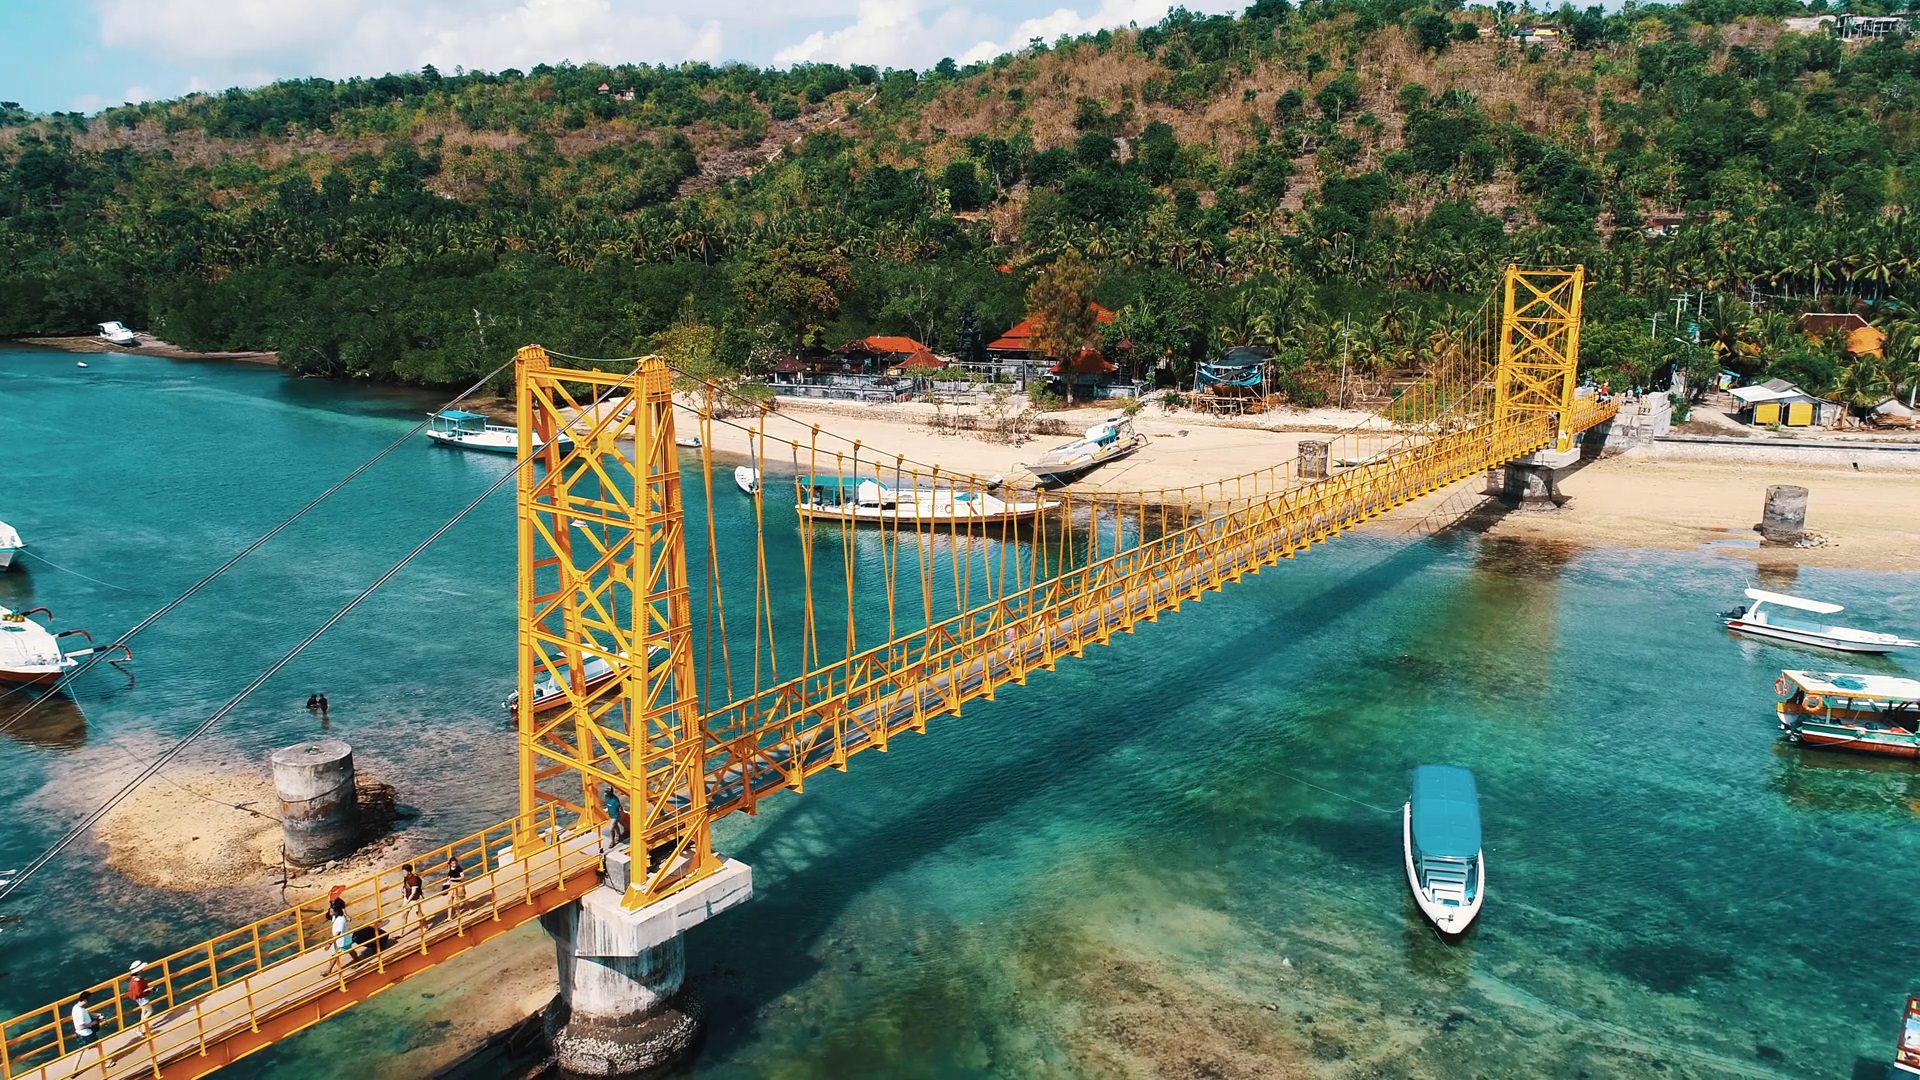 Paket Wisata Explore Nusa Lembongan - Ceningan - Dolan Dolen Tour